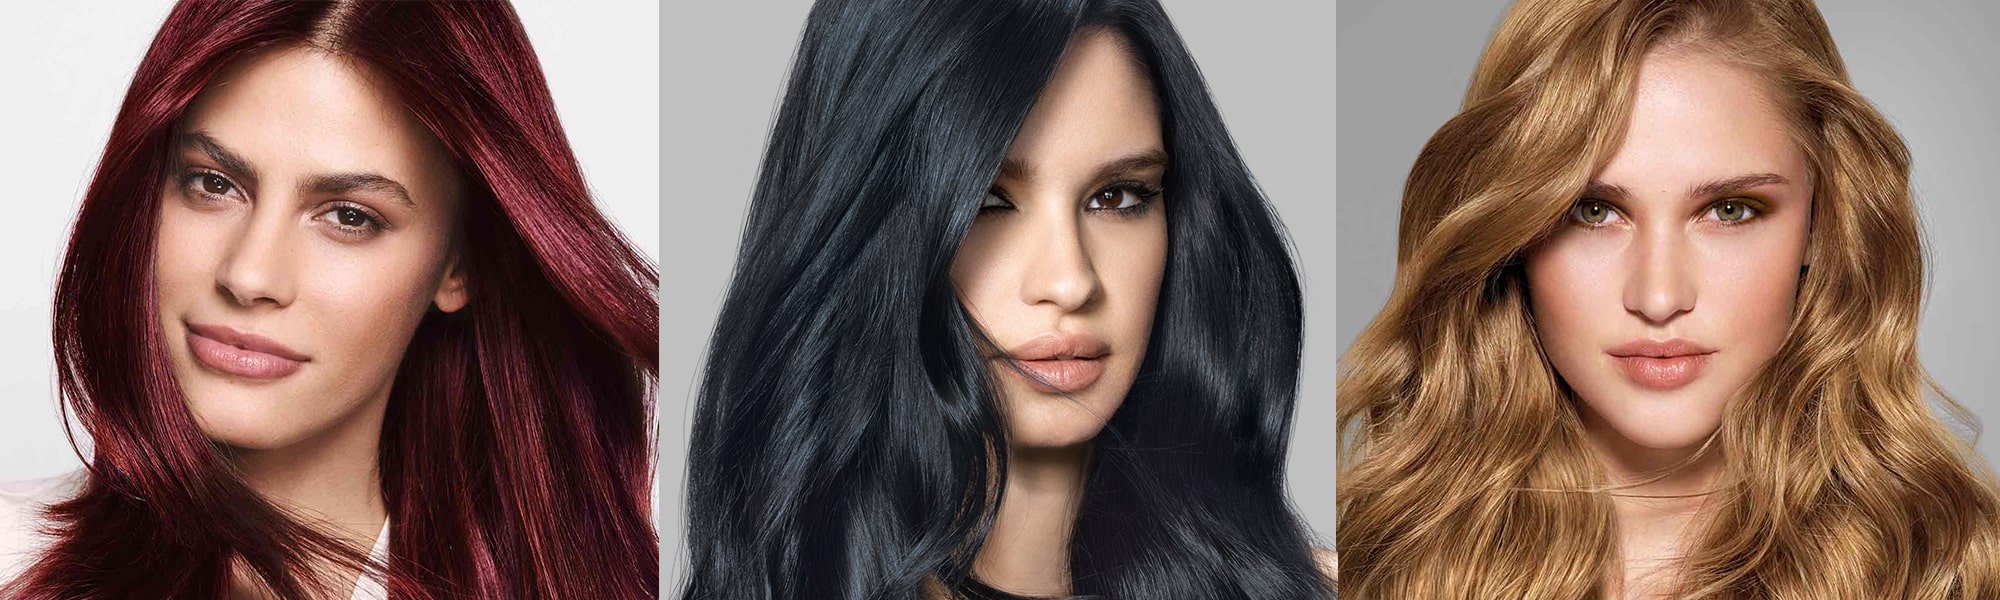 Cómo teñirse el pelo en casa? | L'Oréal México